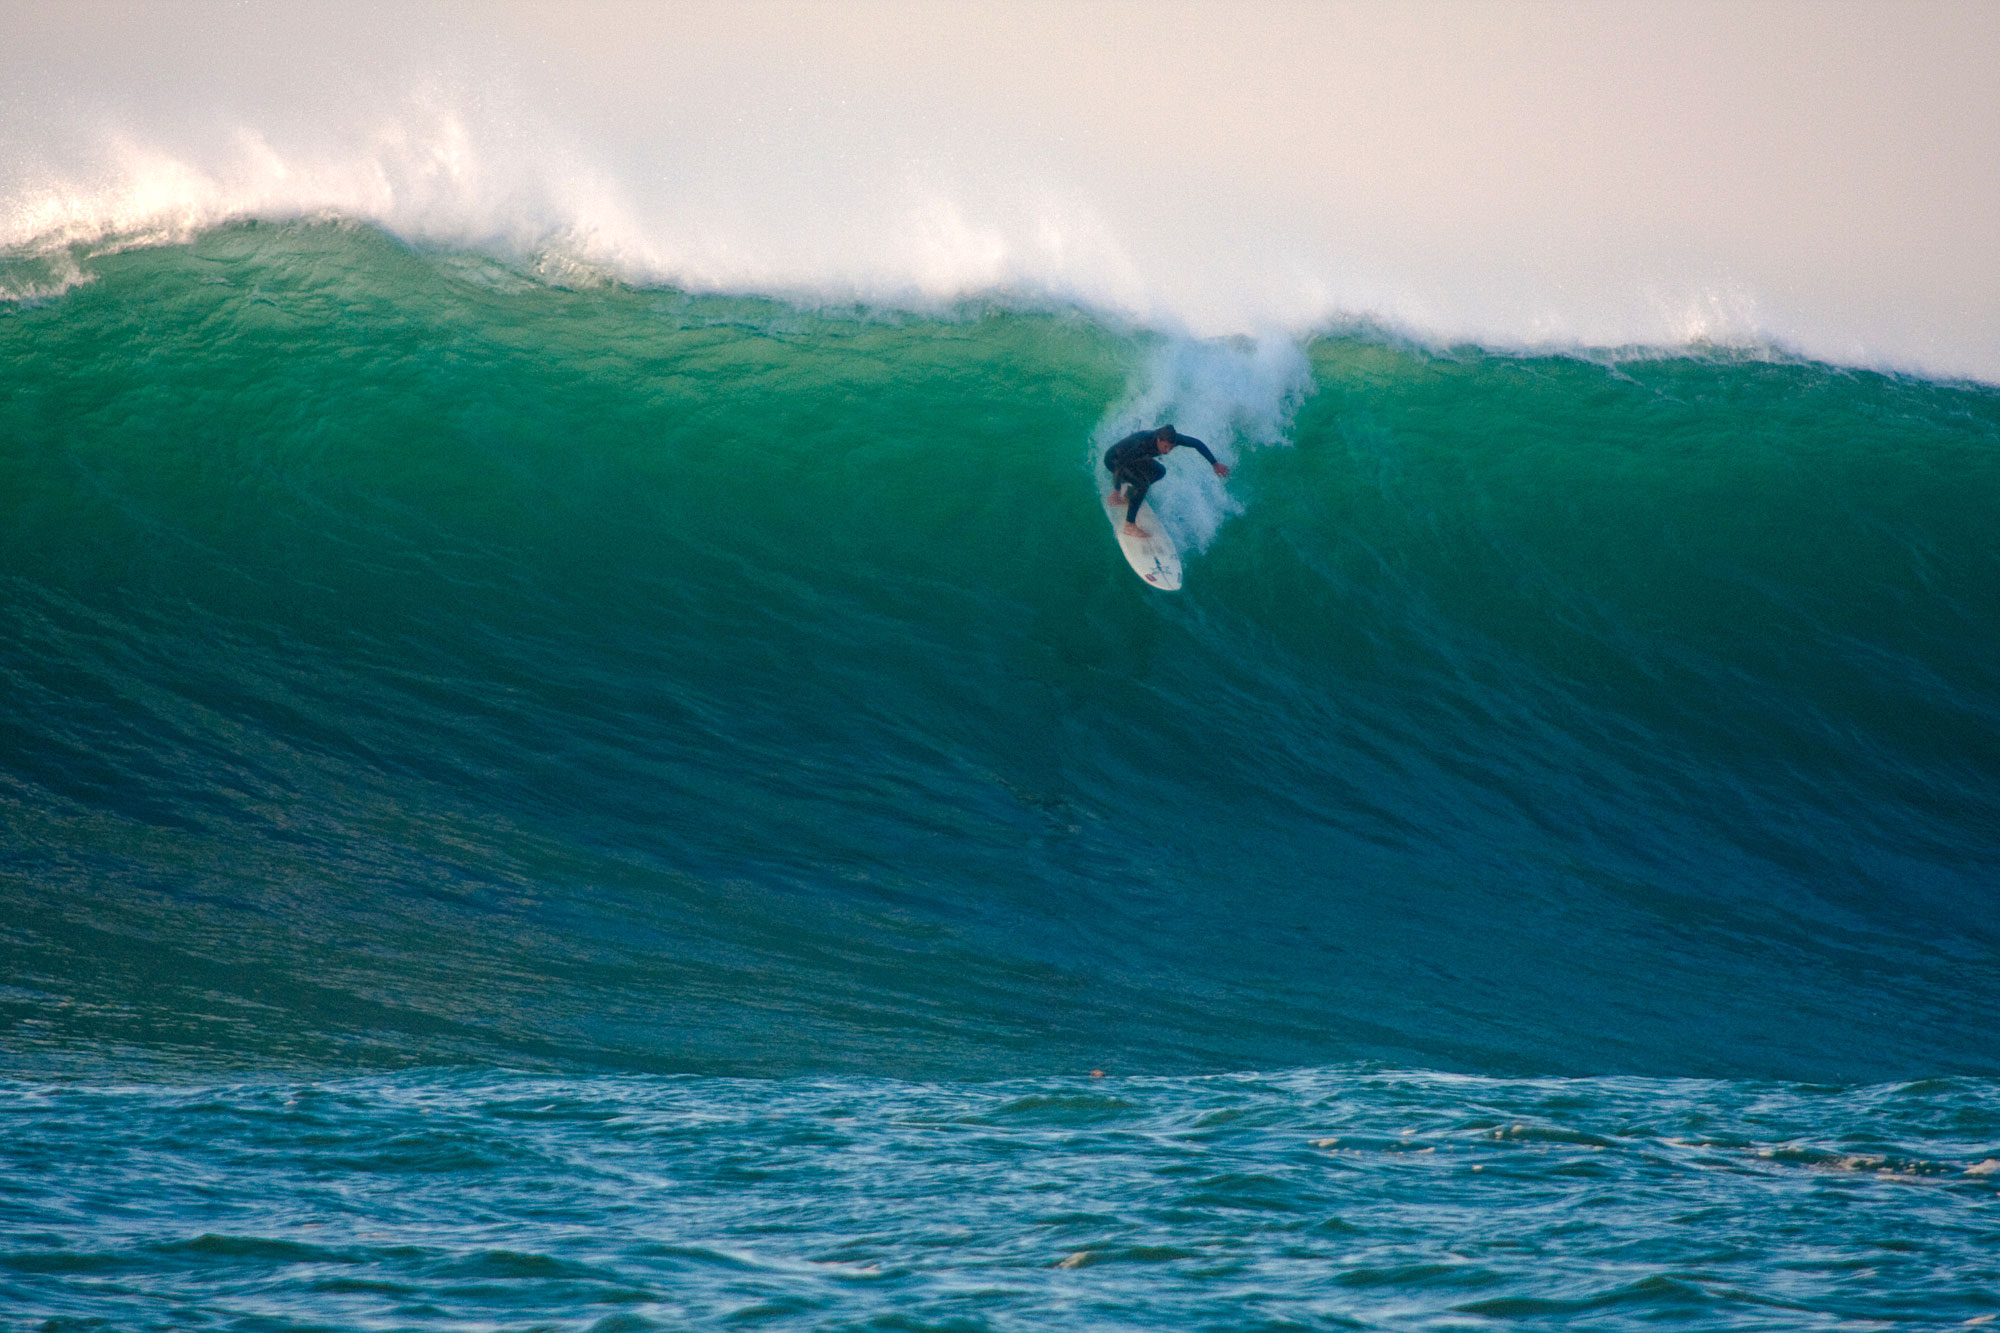 Surfing Euskadi